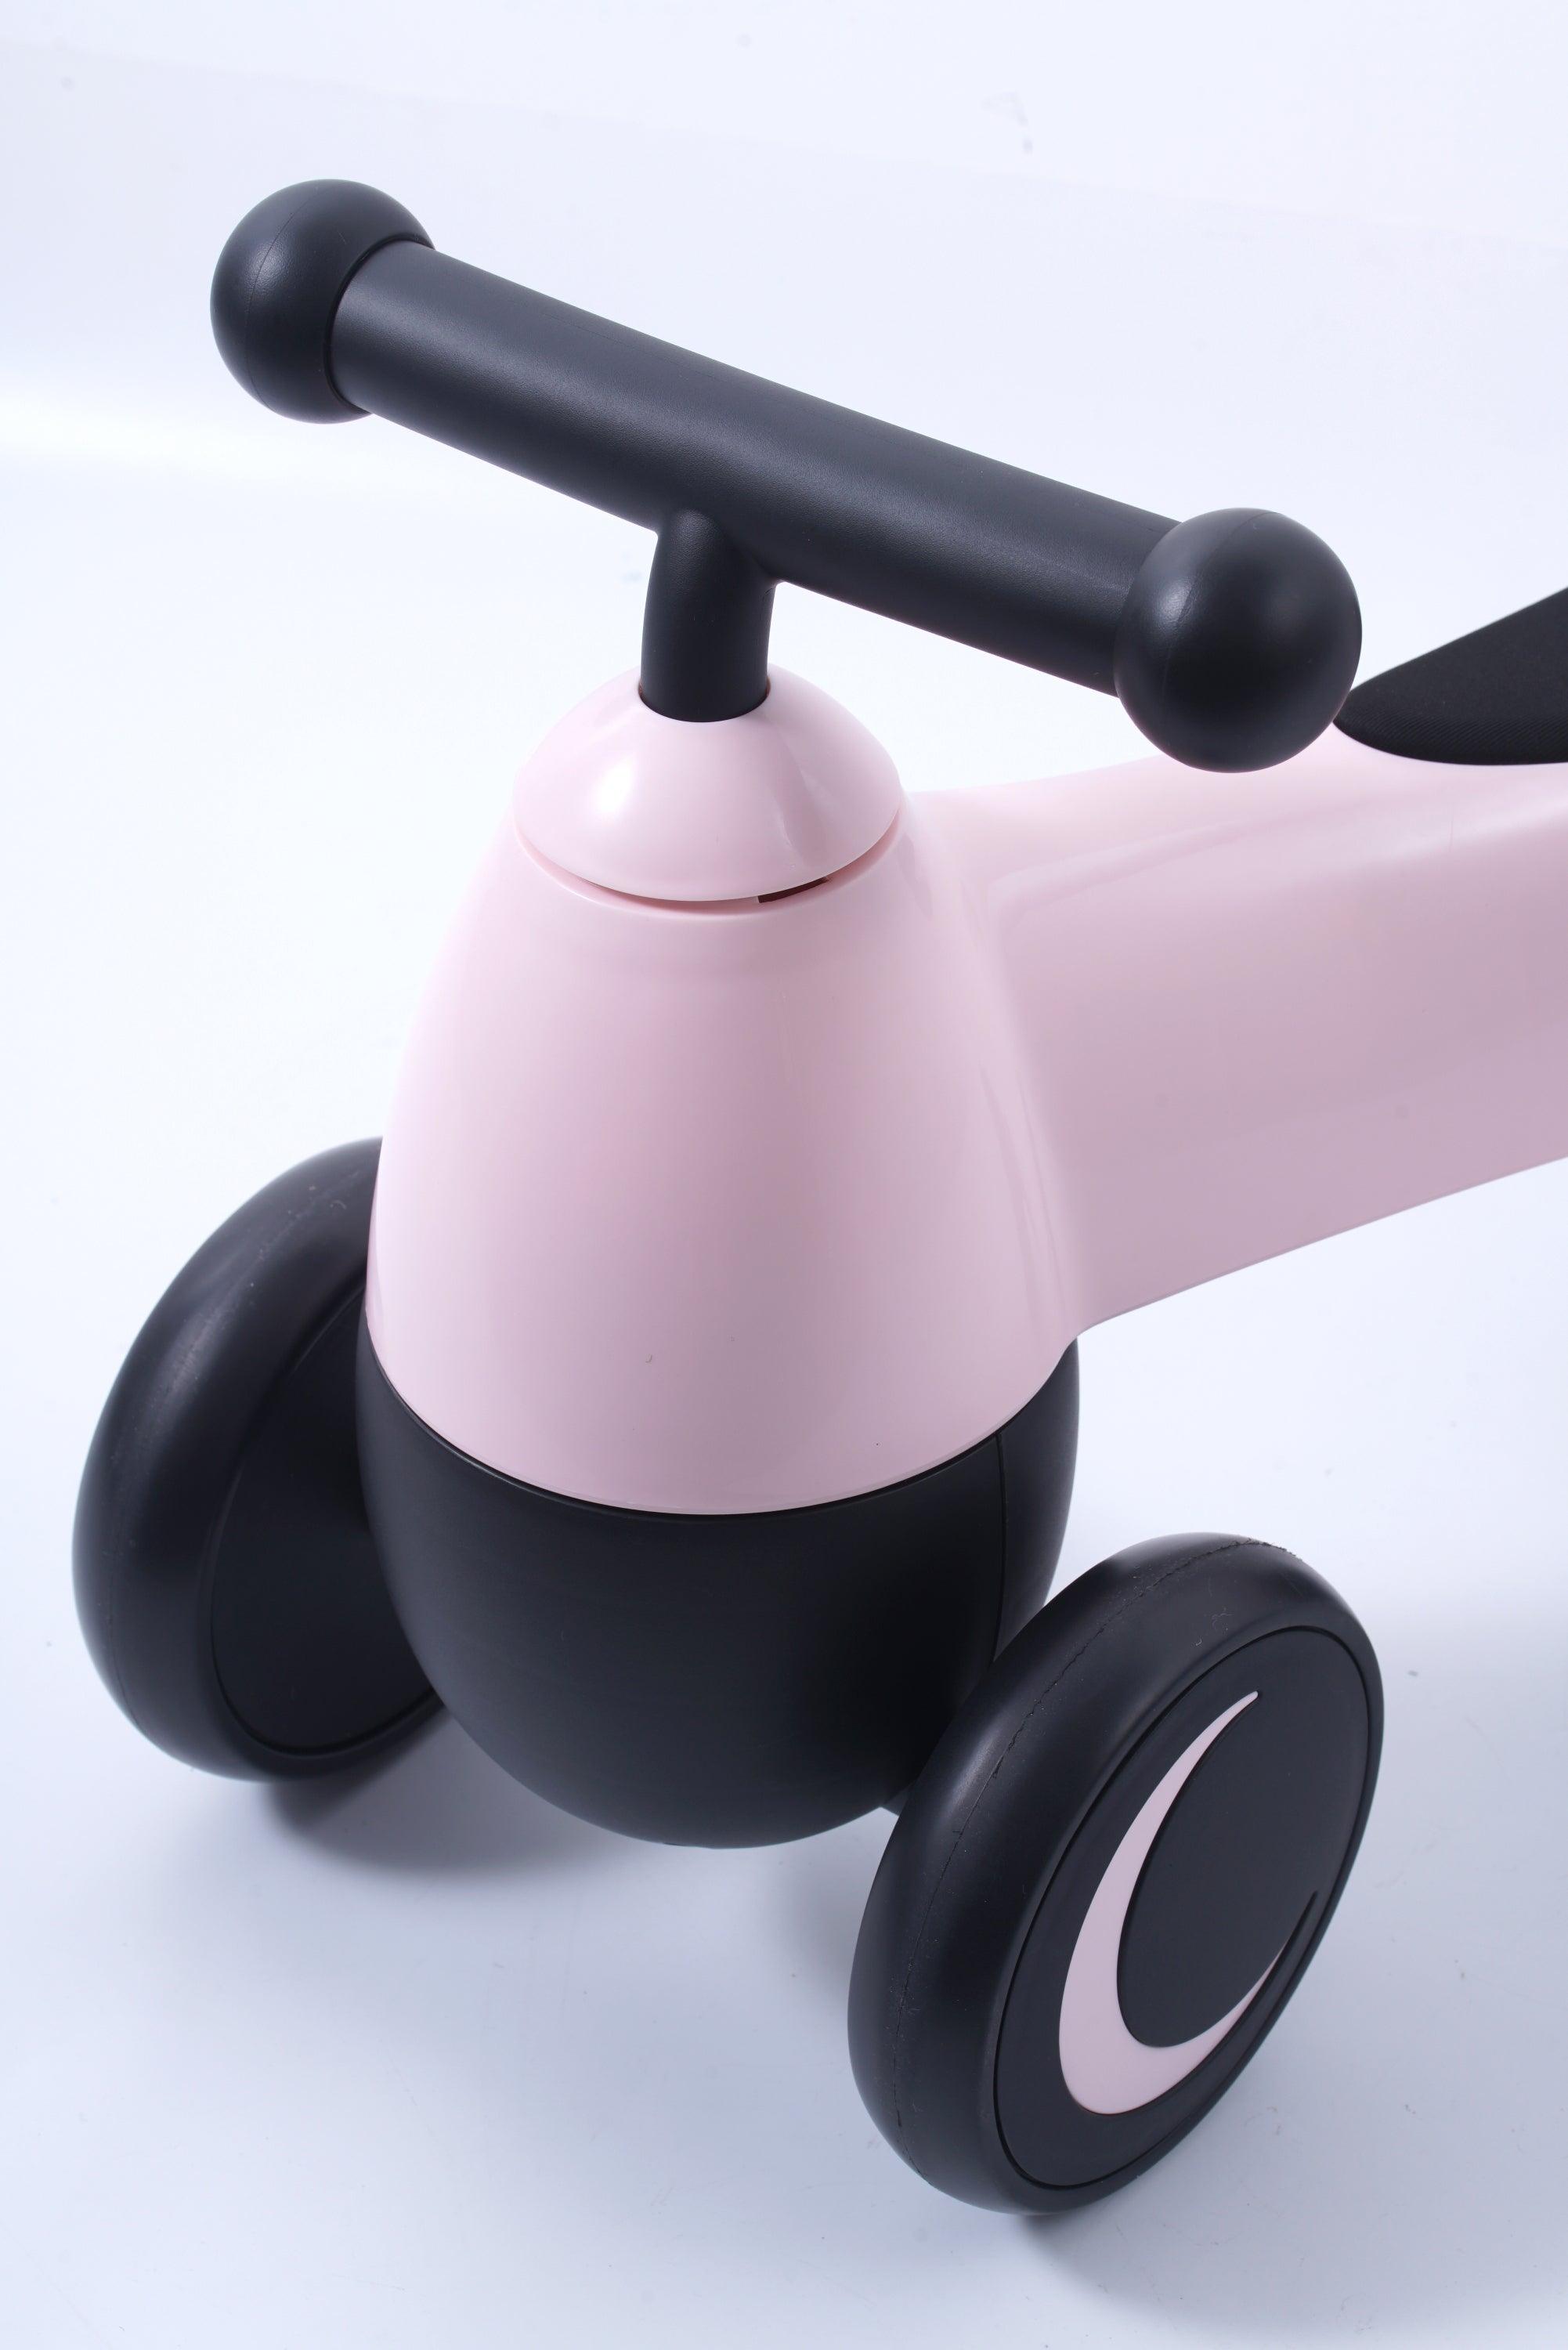 Freddo Toys 4 wheel Balance Bike - DTI Direct Canada